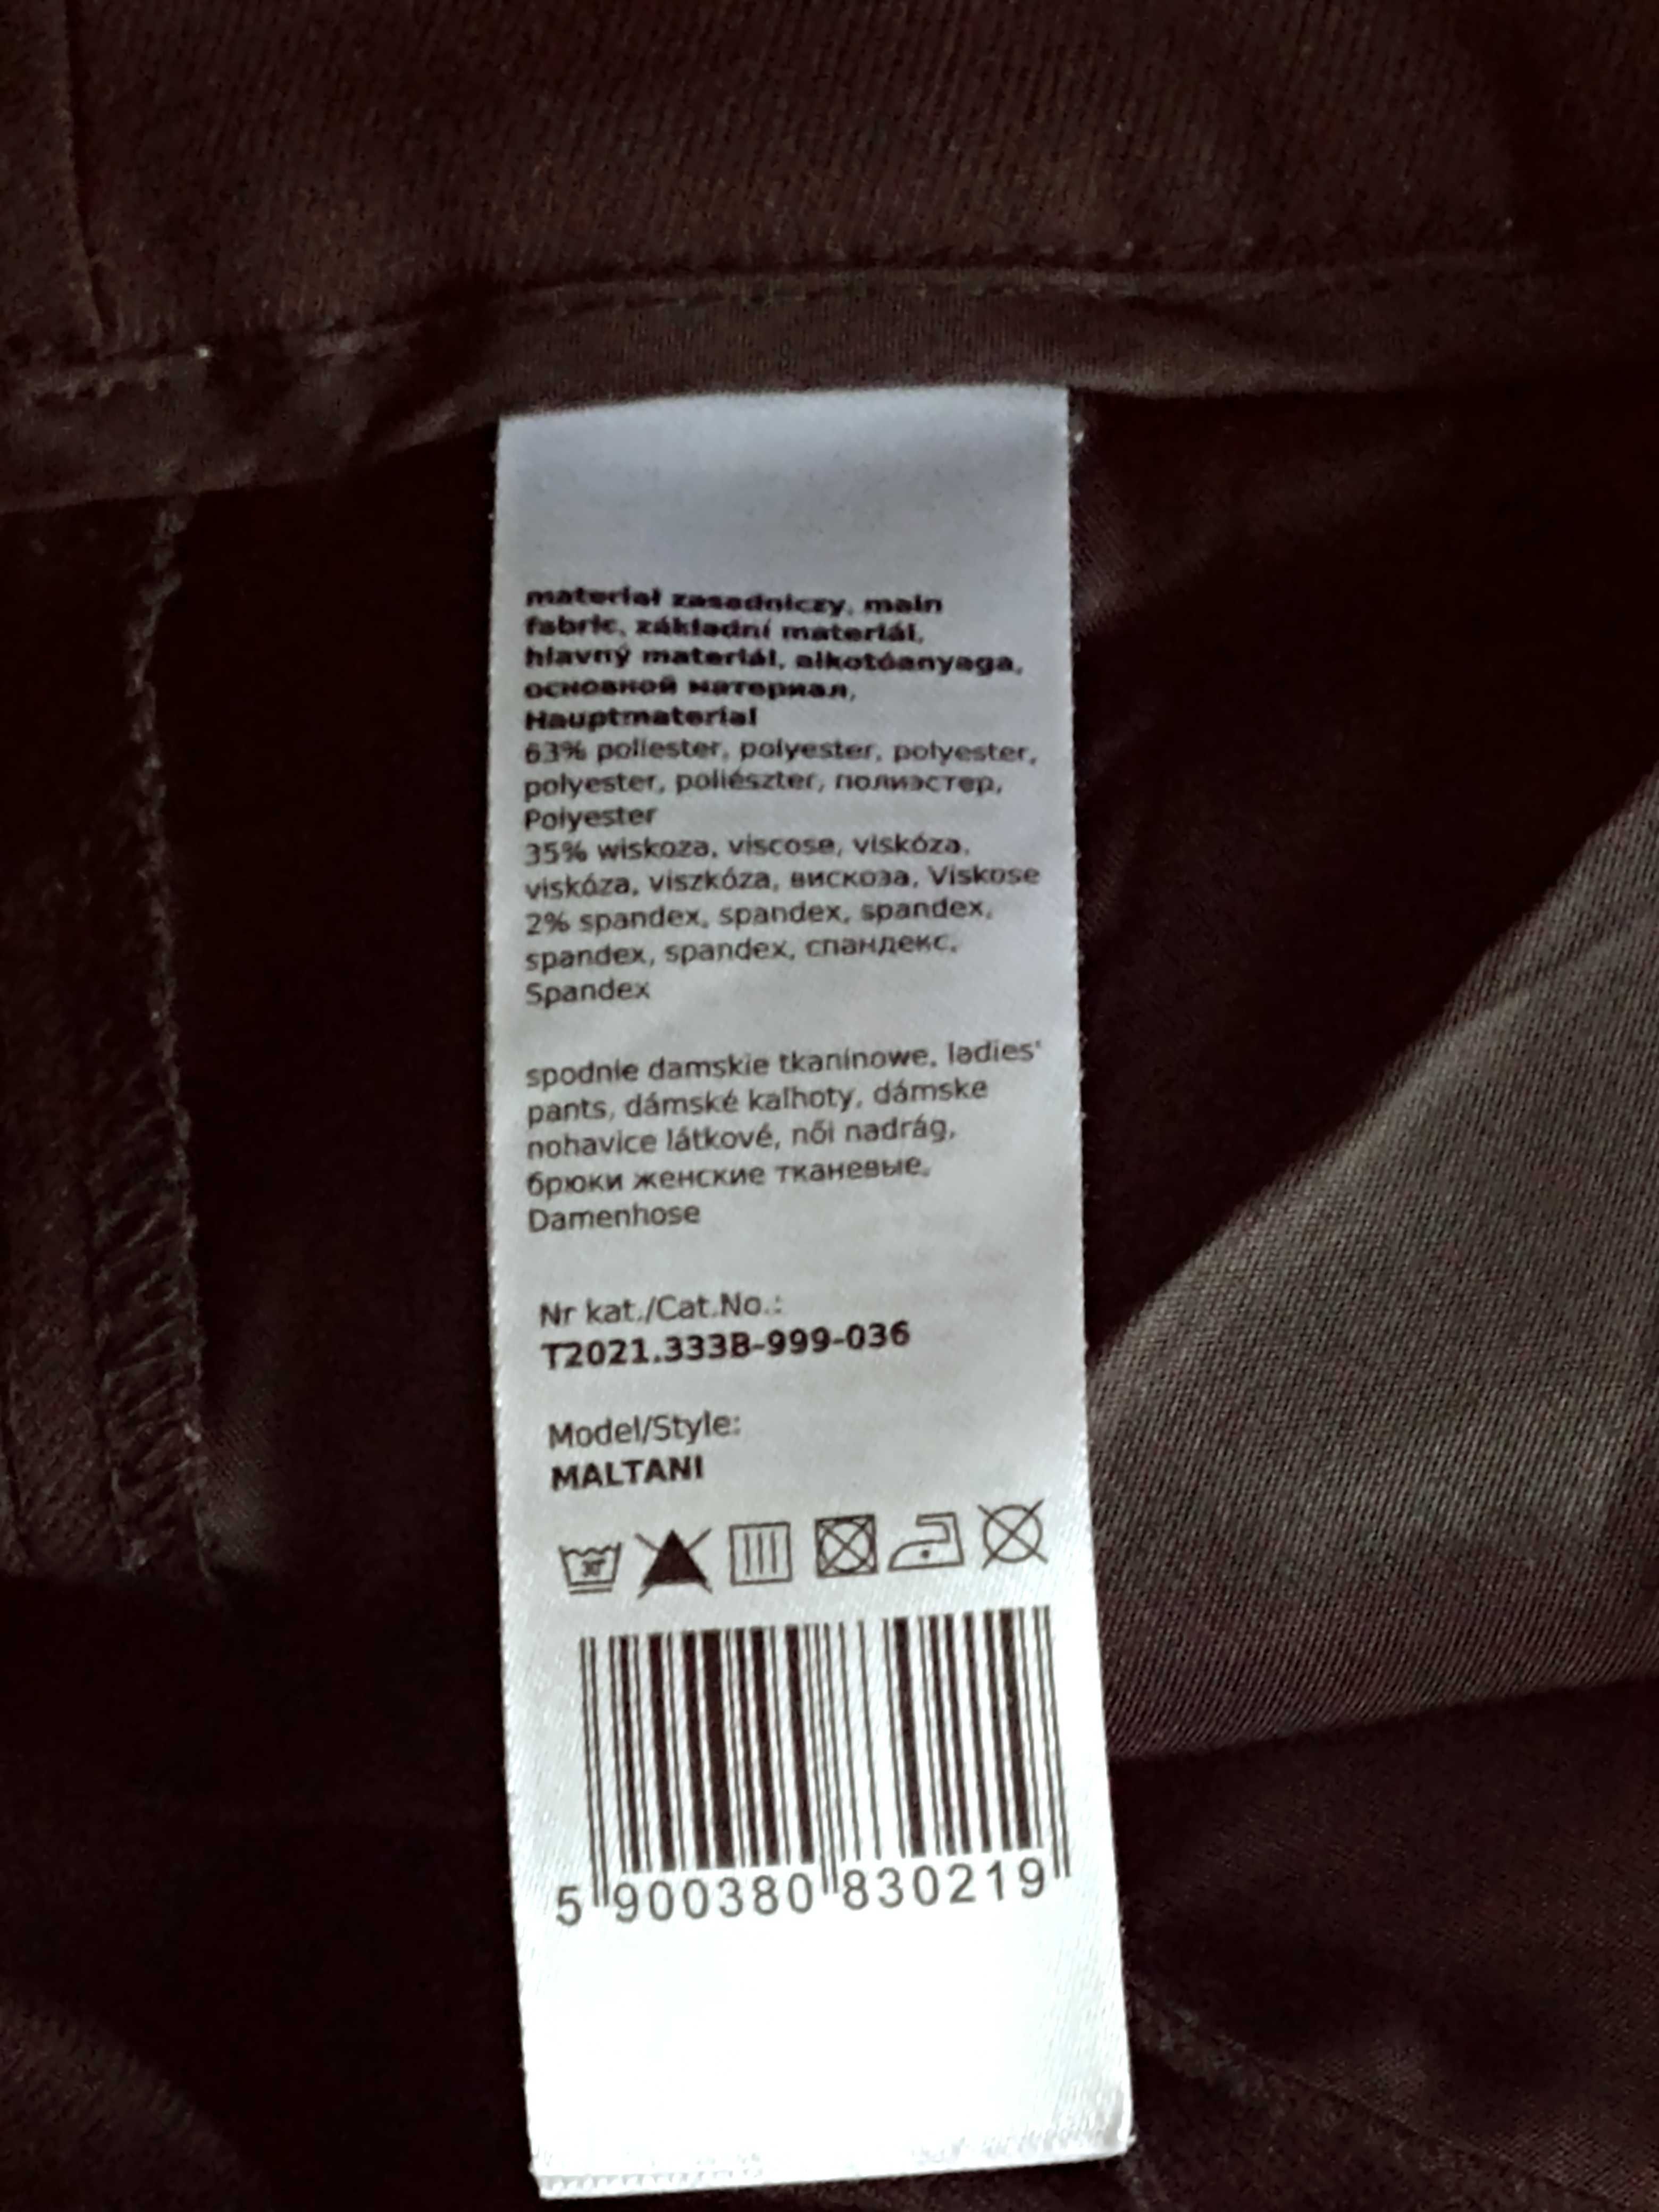 Spodnie materiałowe klasyczne rozmiar 36 czarne  Tatuum